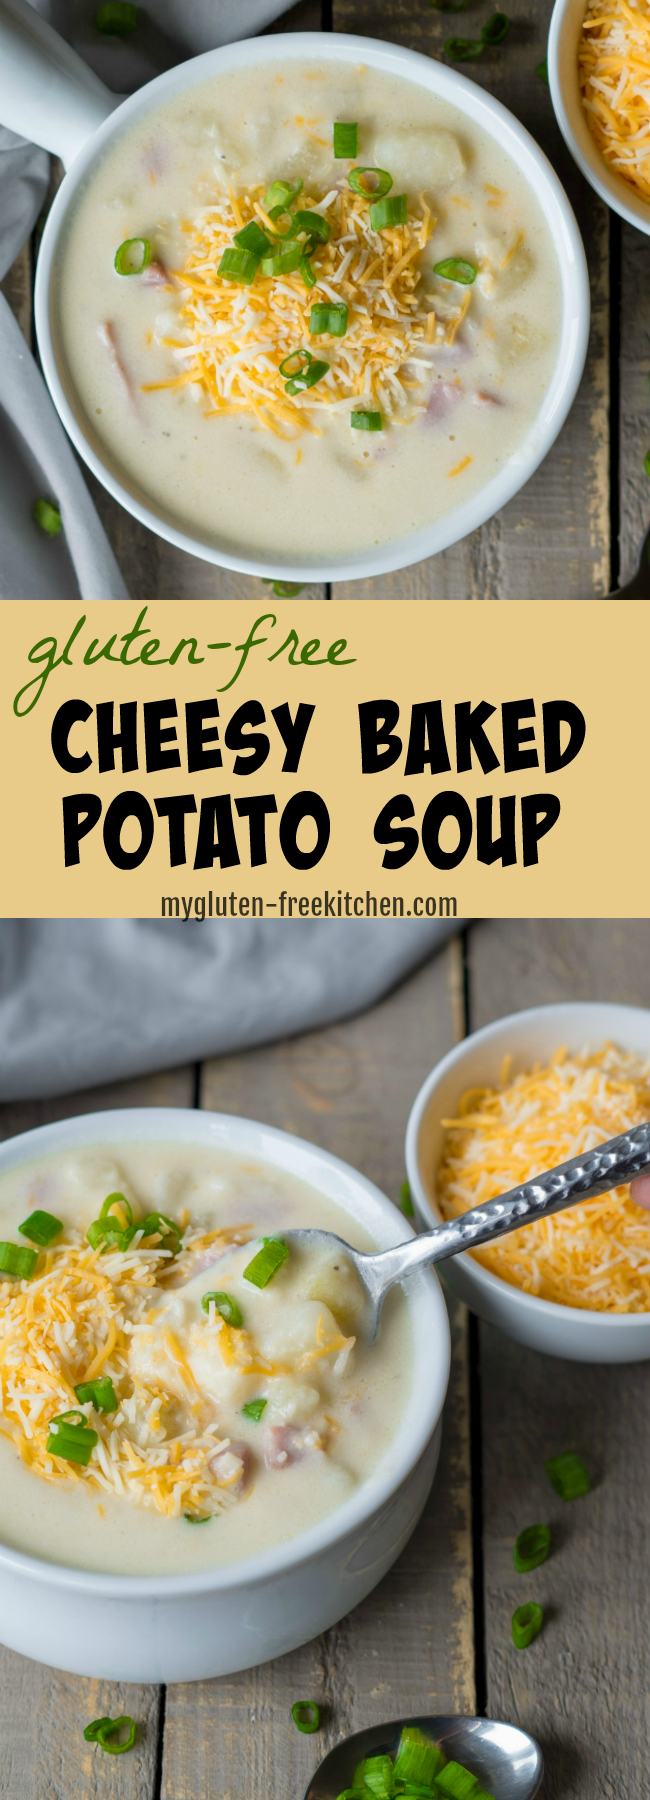 Gluten-free Cheesy Baked Potato Soup recipe